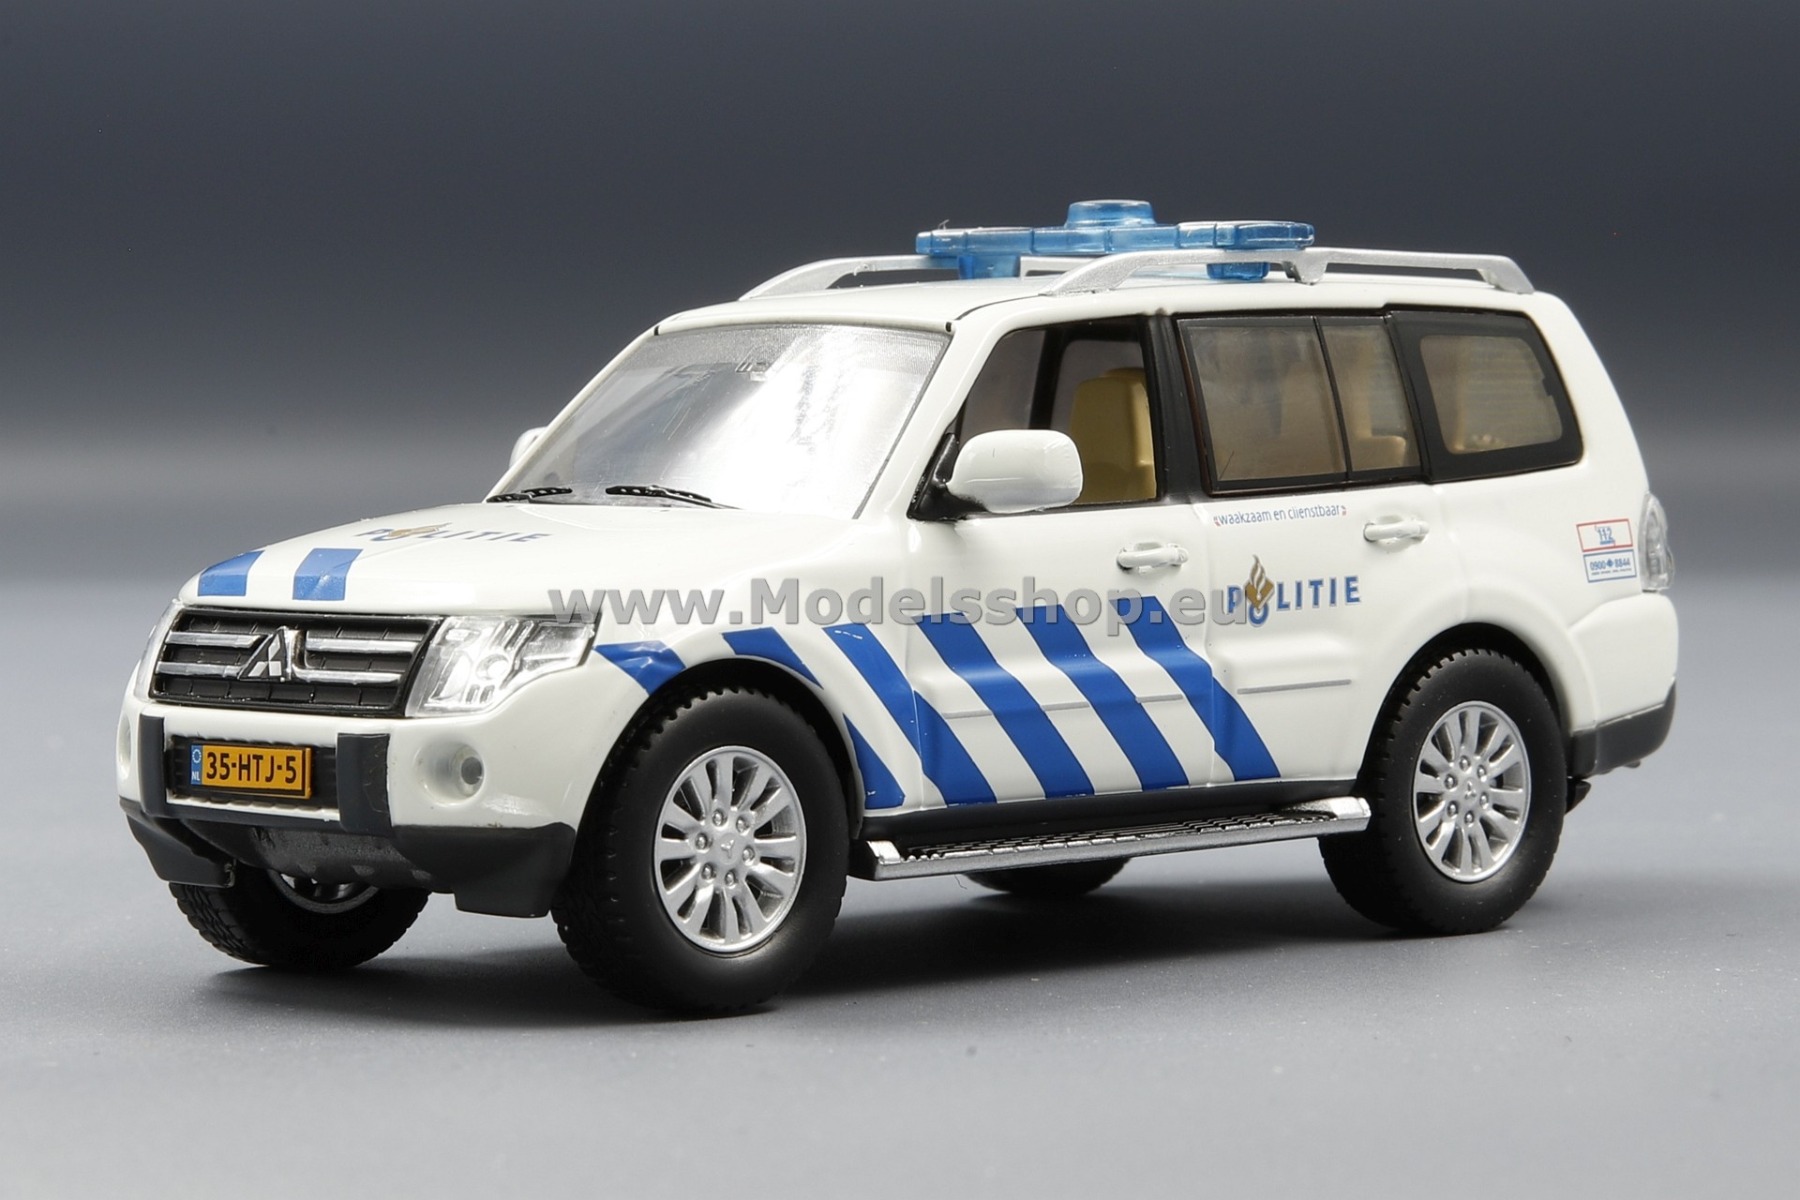 Mitsubishi Pajero 2010, Amsterdam Police